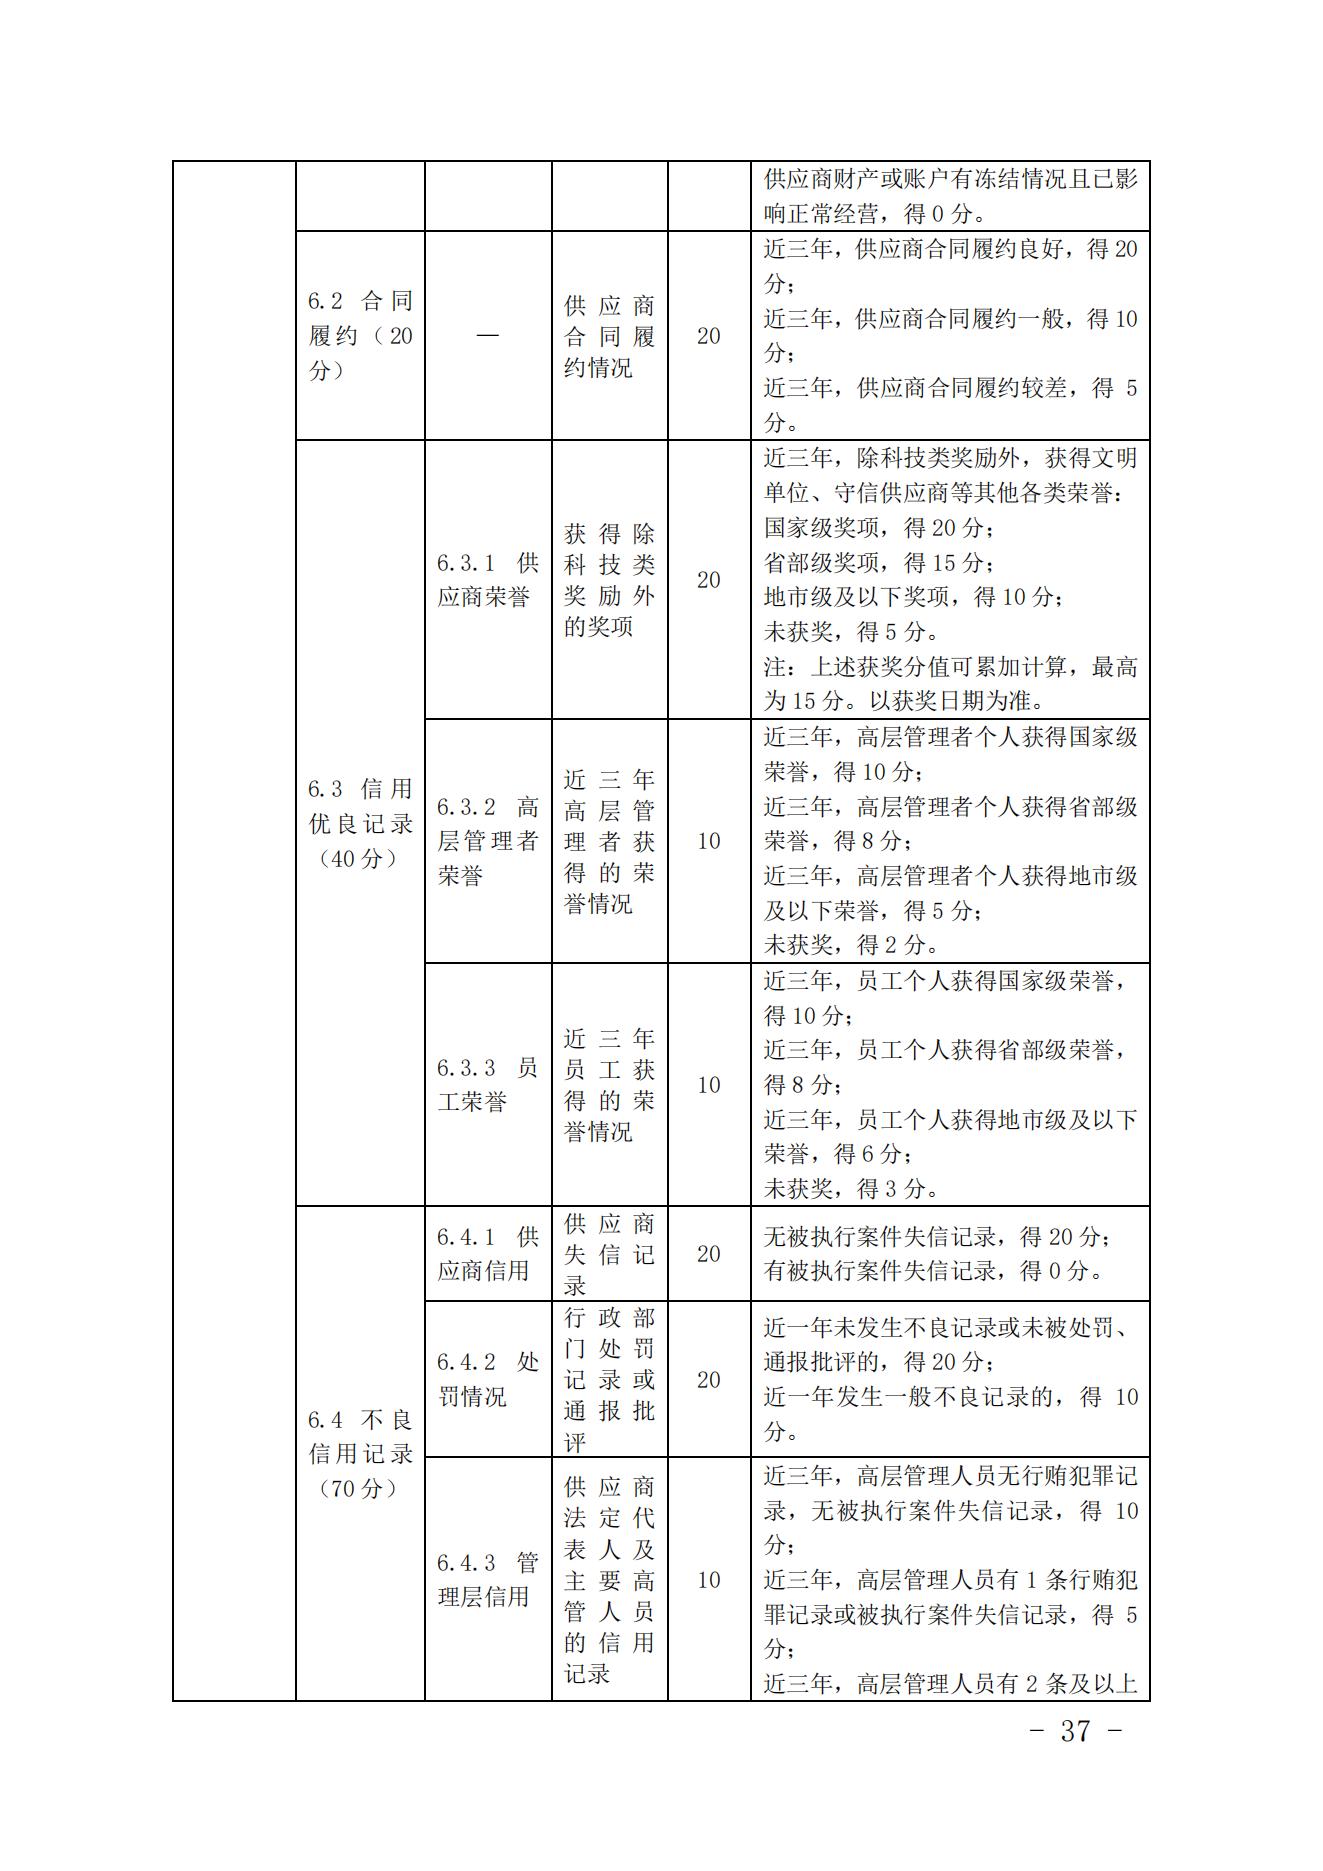 关于印发《中国核能行业协会核能行业供应商信用评价管理办法》《中国核能行业协会核能行业供应商信用评价规范》的通知_36.jpg